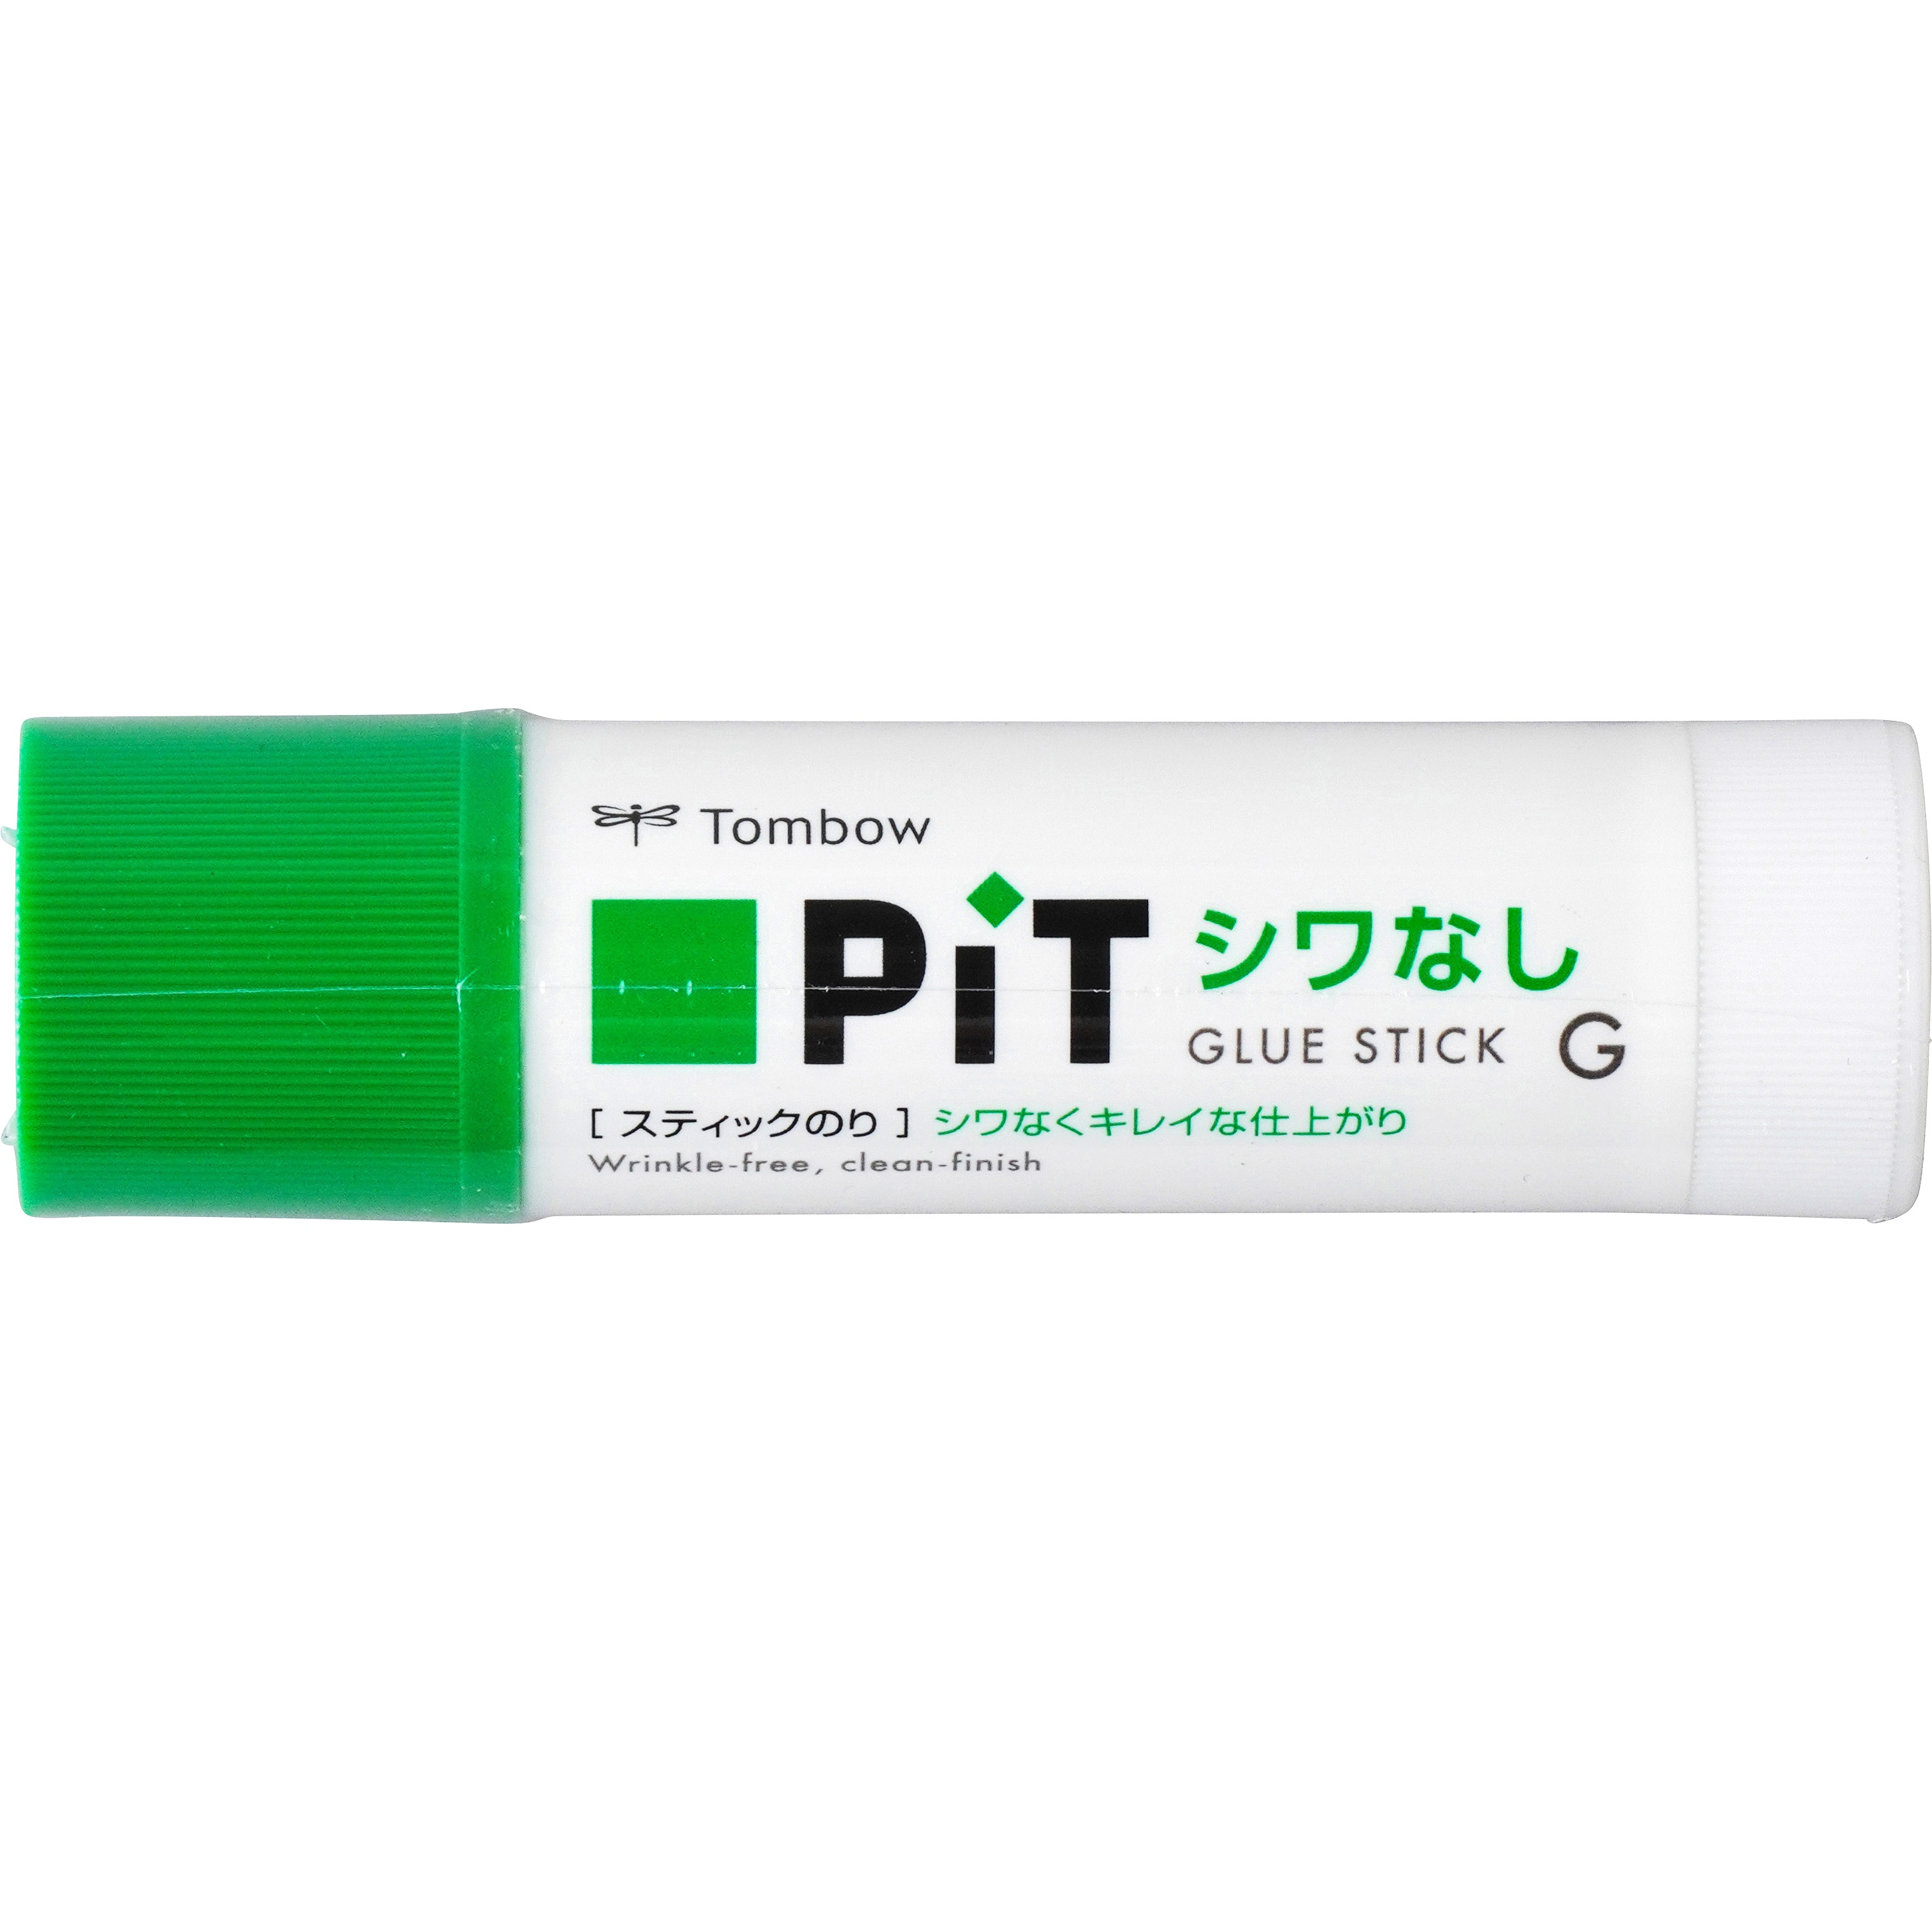 PT-GAS スティック糊 シワなしピット 1本(39g) トンボ鉛筆 【通販